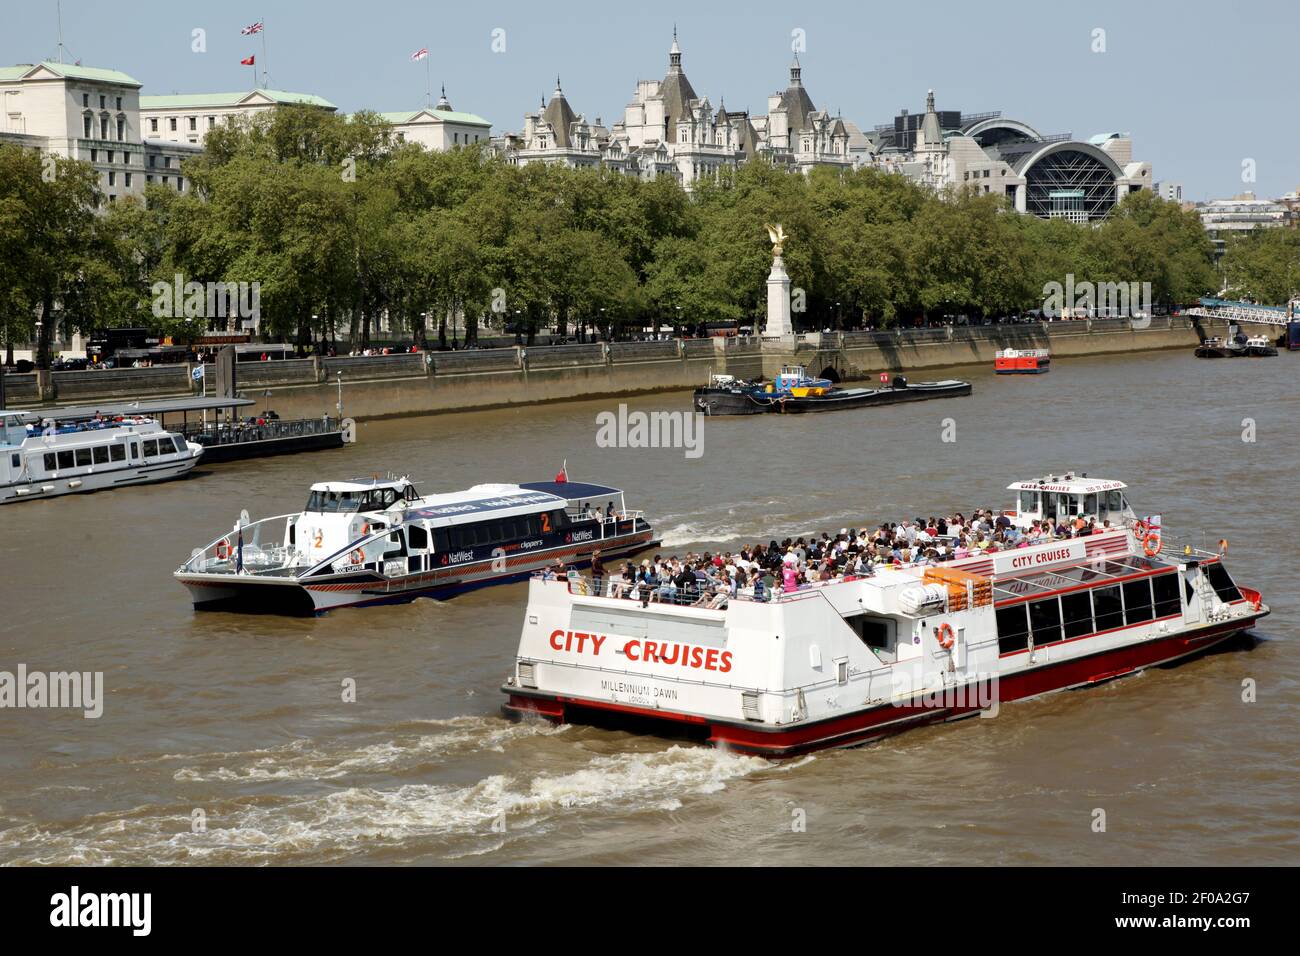 25 avril 2011. Londres, Angleterre. Les bateaux de croisière touristiques font le commerce sur la Tamise à Westminster, près du Parlement et du London Eye. Crédit photo: Charlie Varley/Sipa USA Banque D'Images